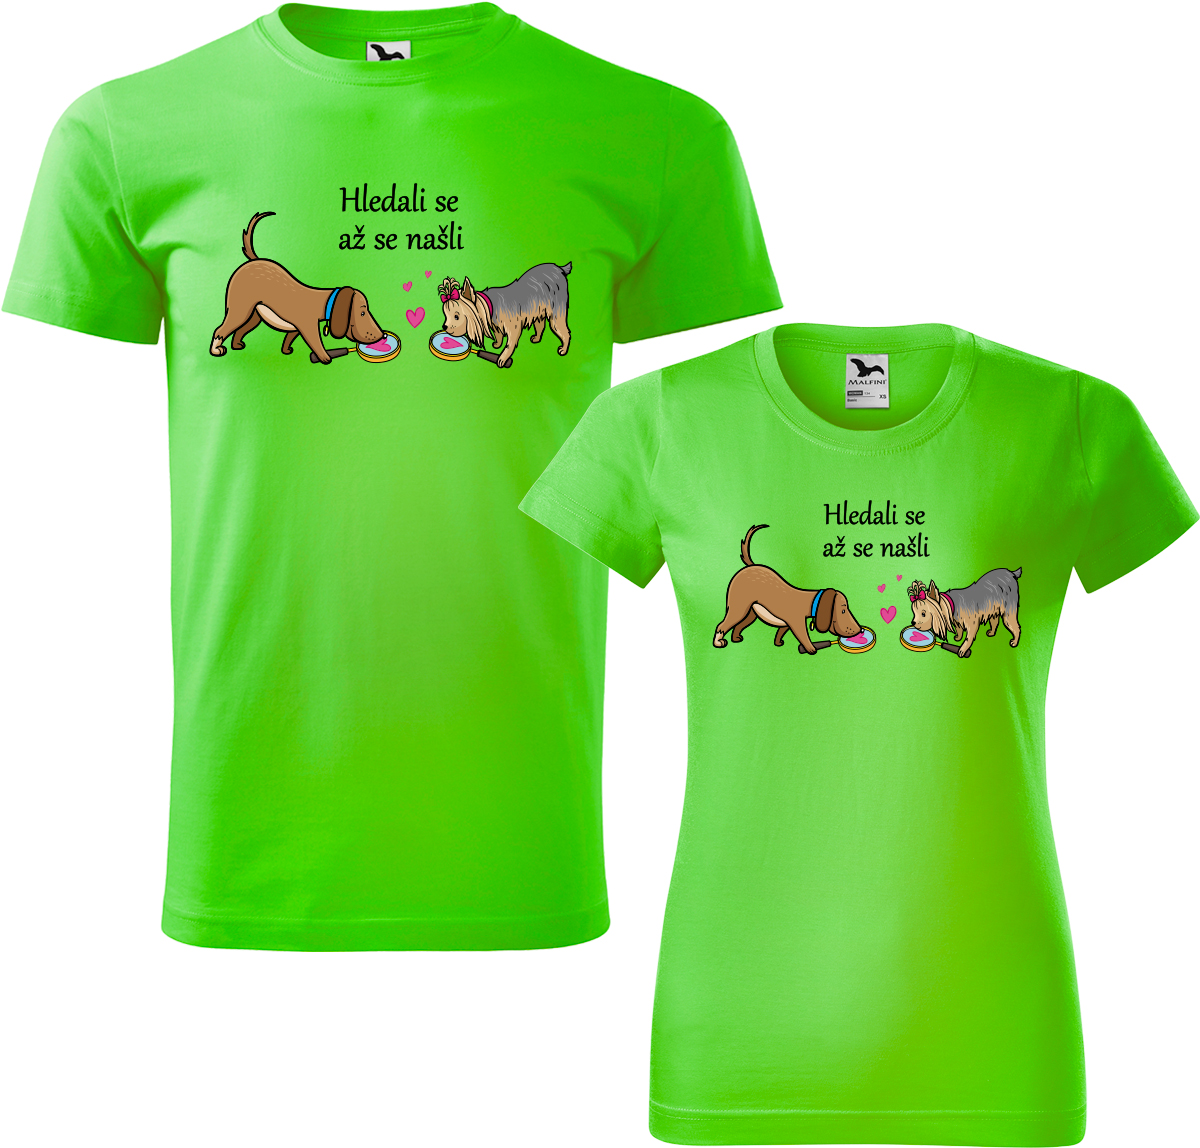 Trička pro páry - Hledali se až se našli Barva: Apple Green (92), Velikost dámské tričko: M, Velikost pánské tričko: M